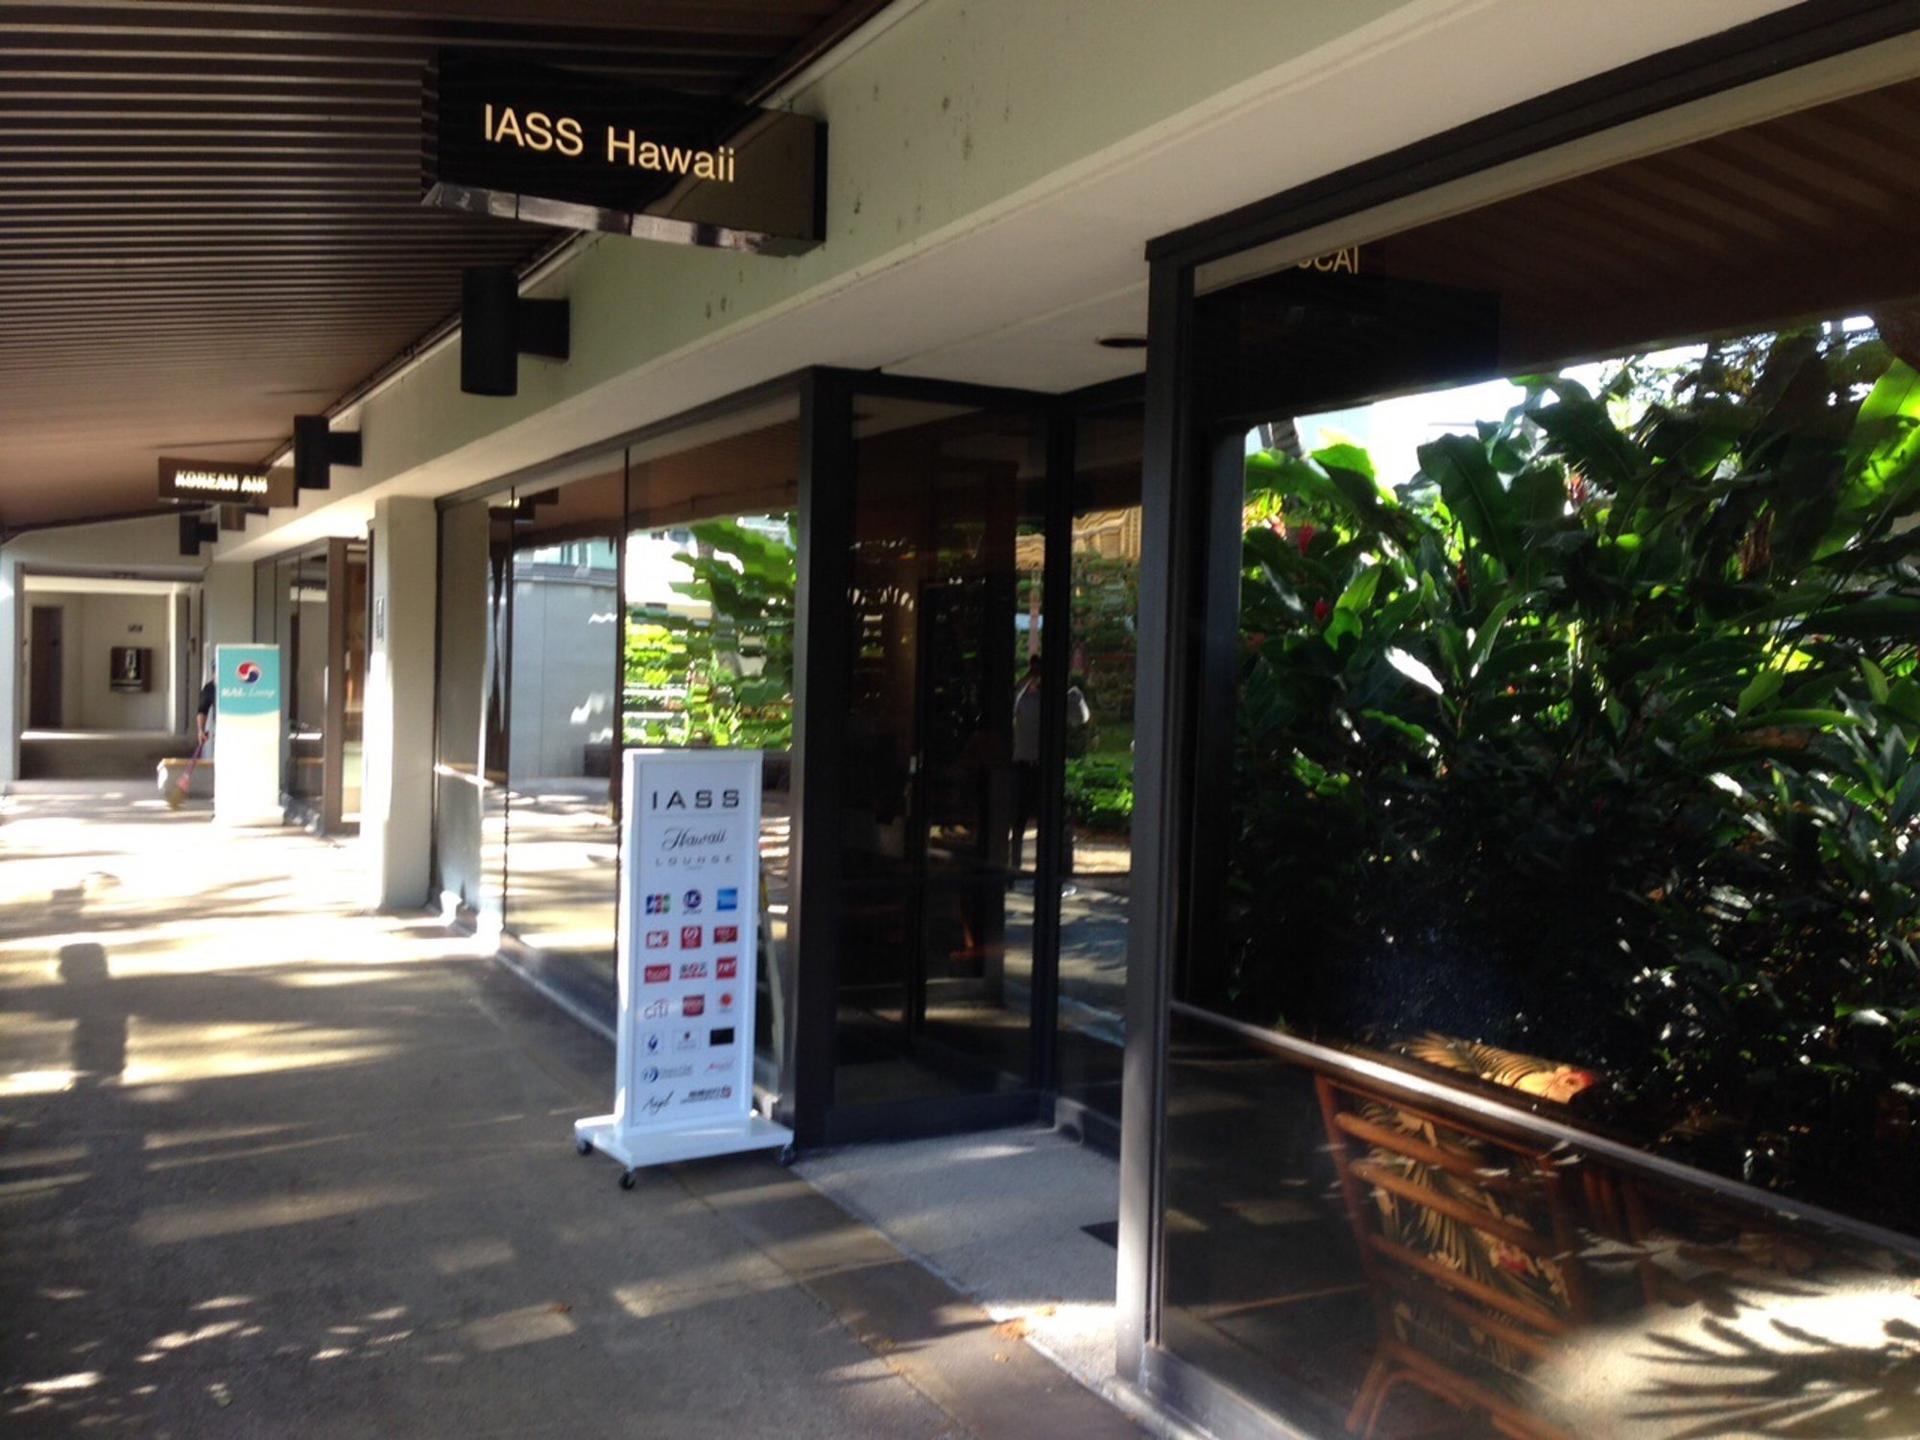 IASS Hawaii Lounge image 19 of 39